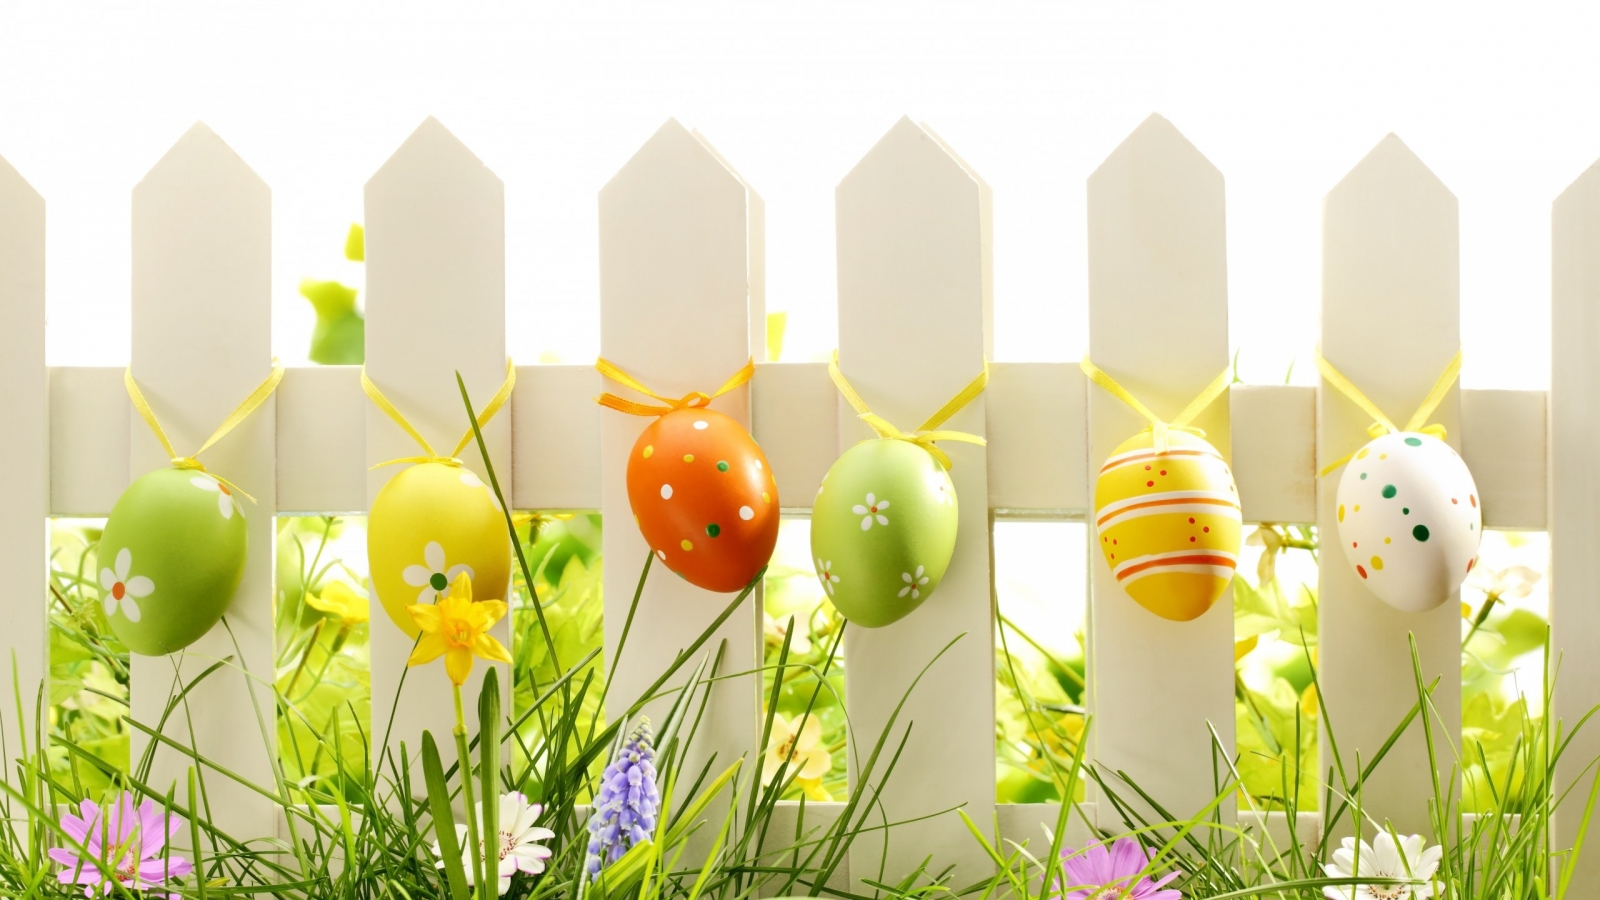 Lovely Easter Eggs Decoration for 1600 x 900 HDTV resolution